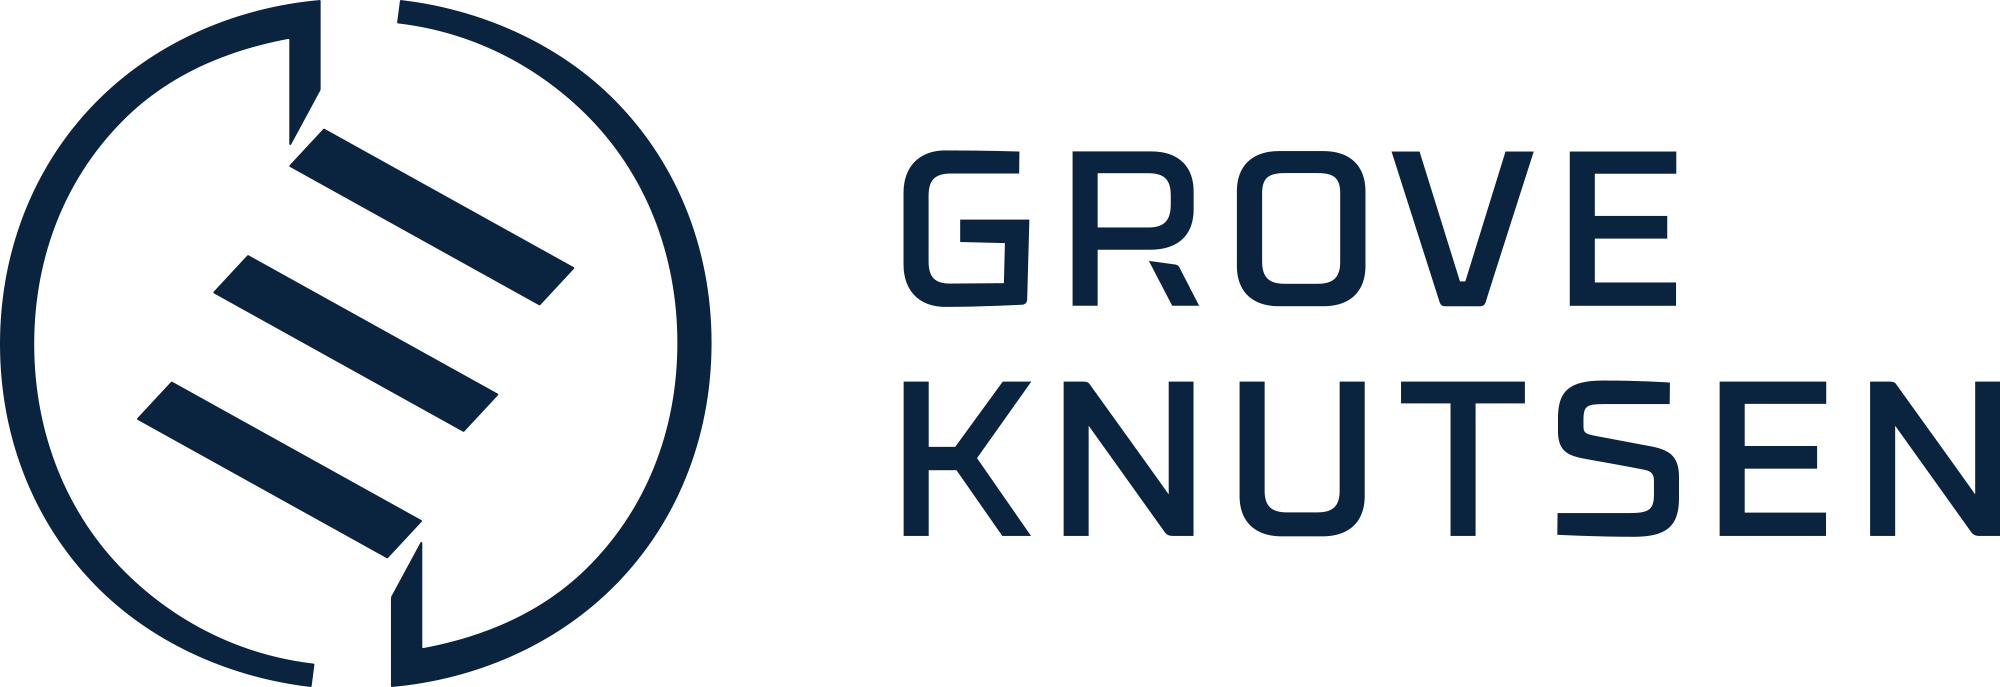 Grove Knutsen & Co AS